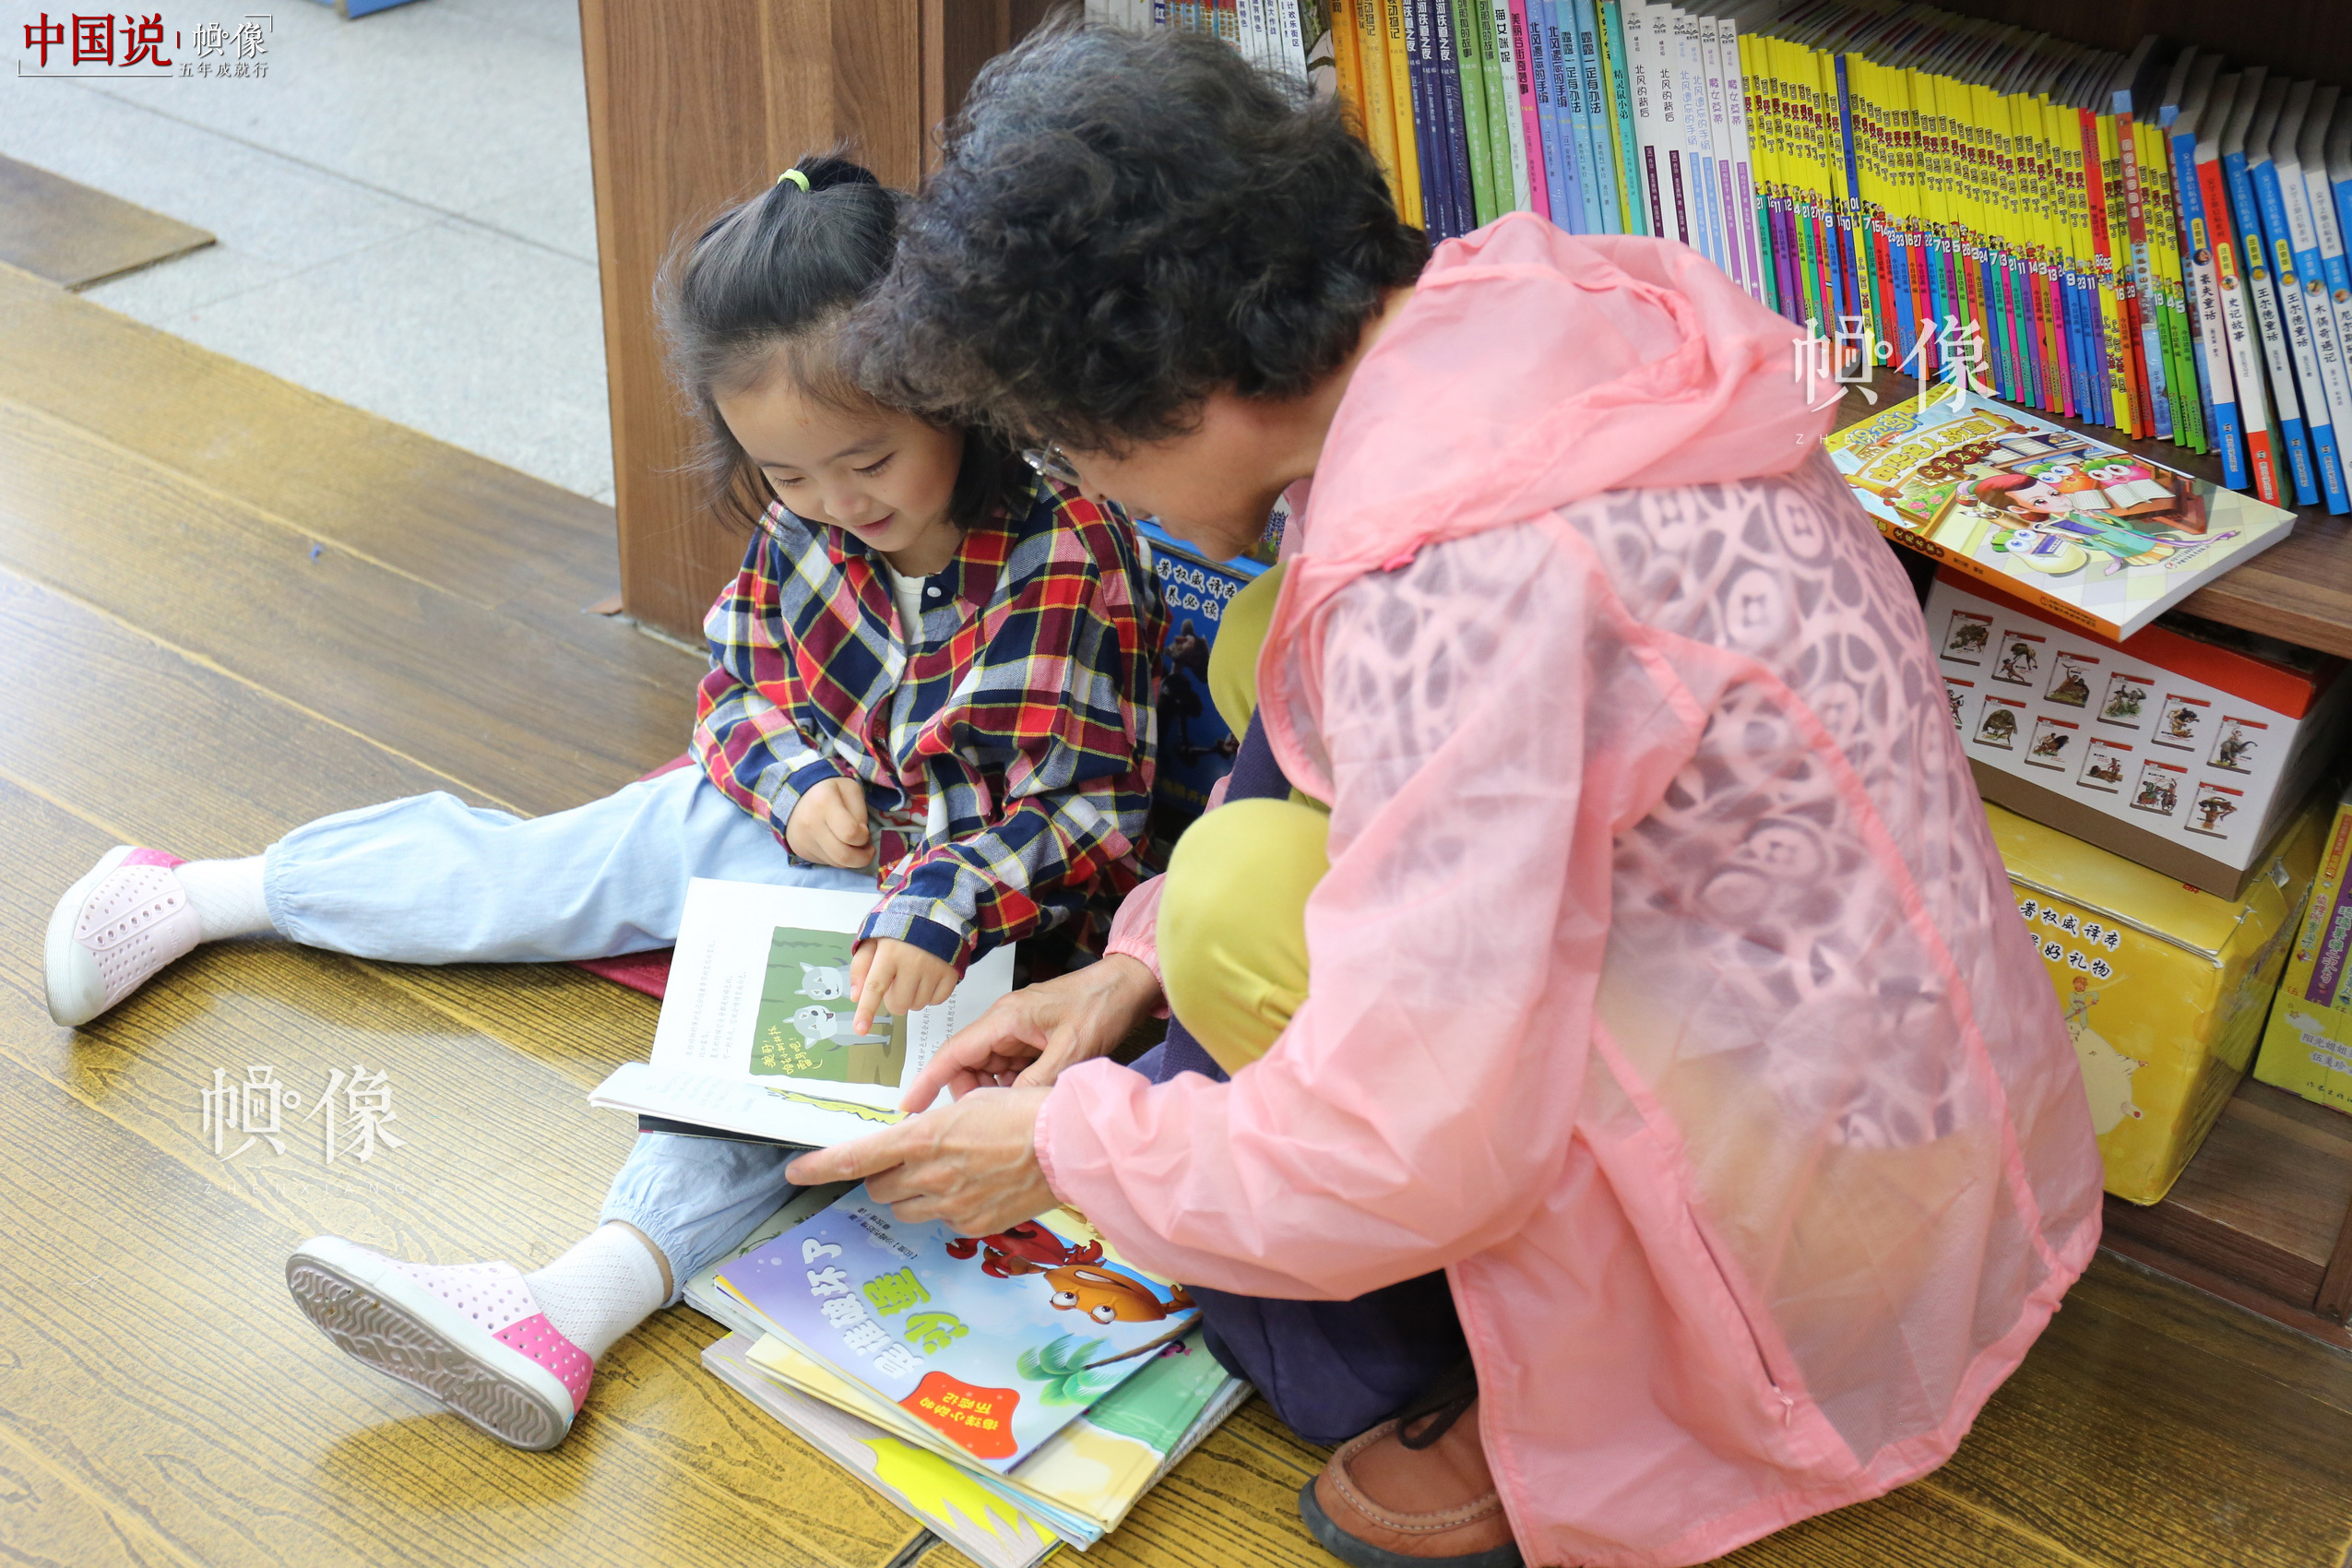 5月23日，北京三联书店美术馆店，一位老者给孙女读书。 中国网记者 赵超 摄